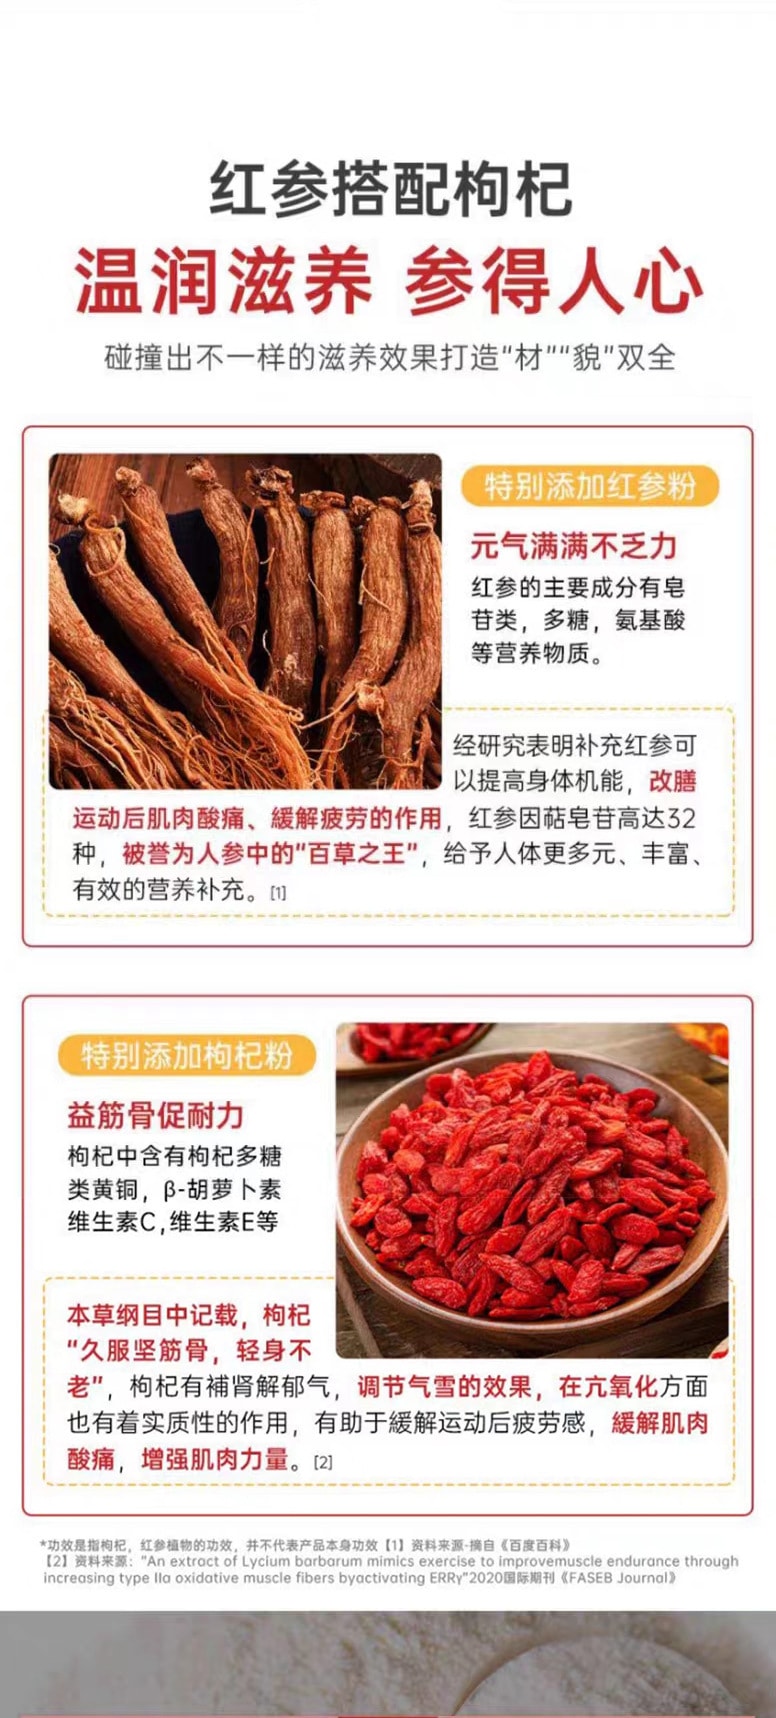 中國 鴻恩本草 紅參多維片 32克 (0.8克*40粒) 每片添加紅蔘 16mg 運動營養保健食品 促進